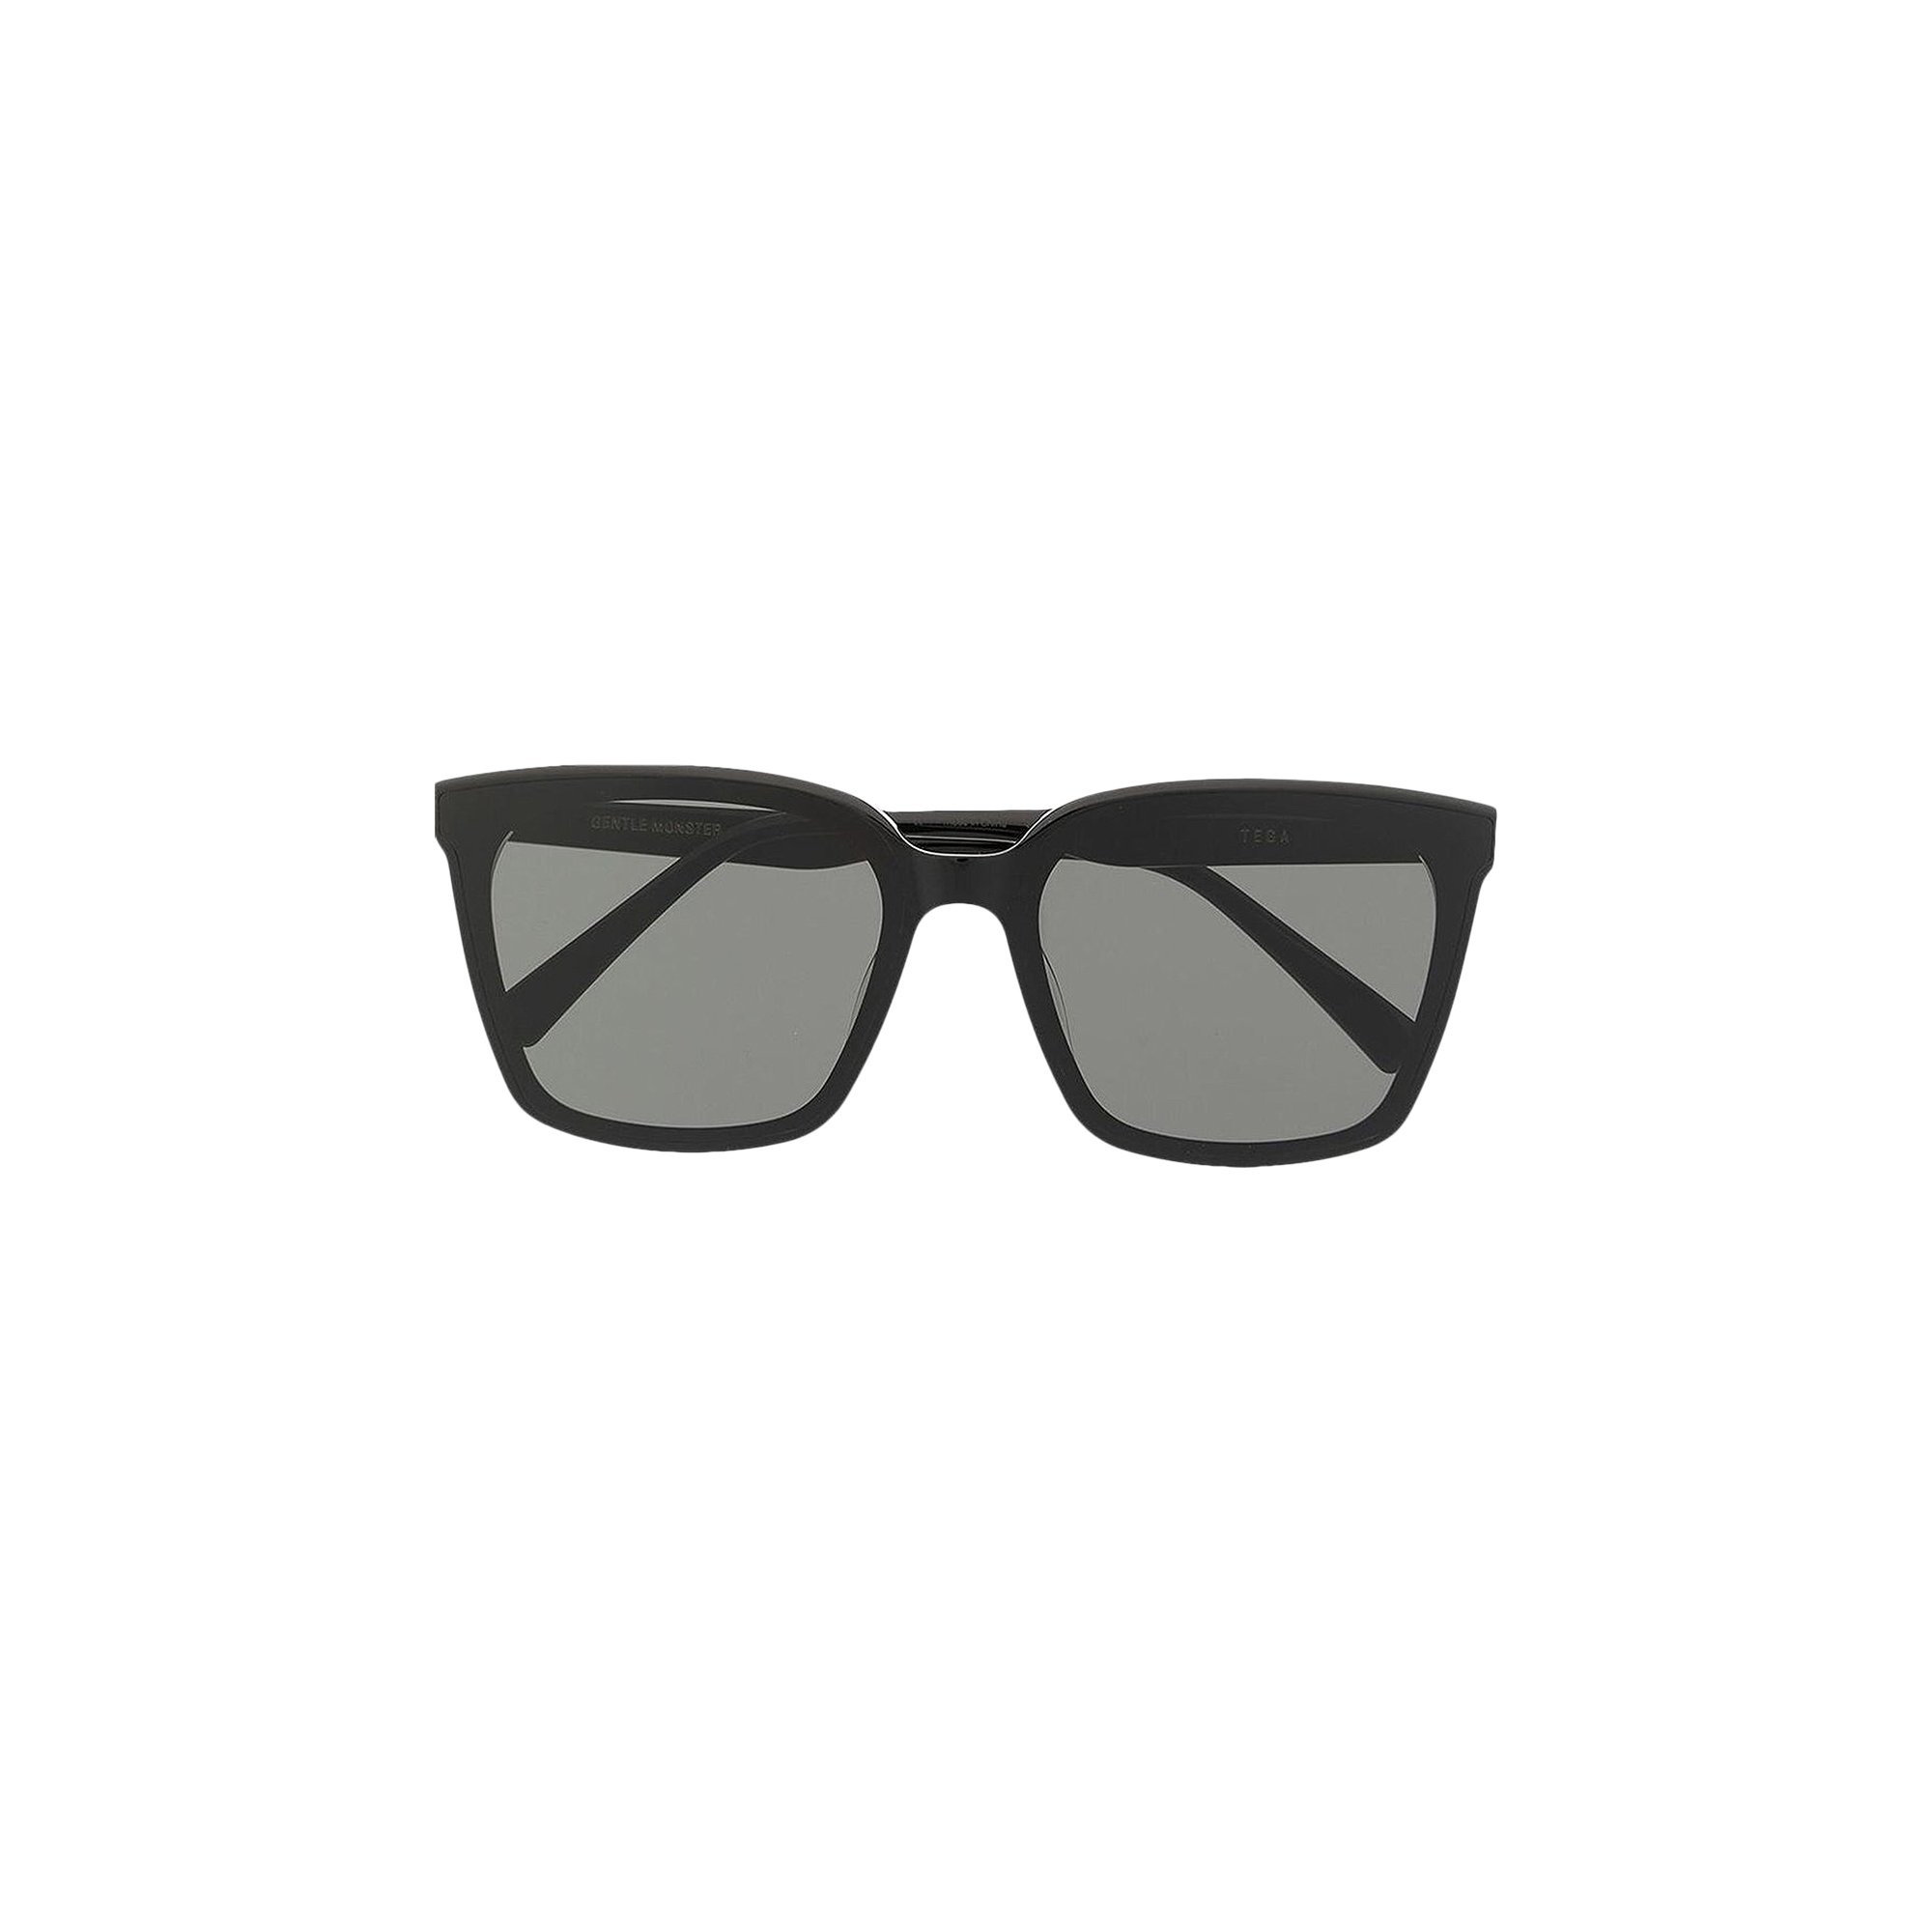 Buy Gentle Monster Tega 01 Sunglasses 'Black' - TEGA 01 BLAC | GOAT